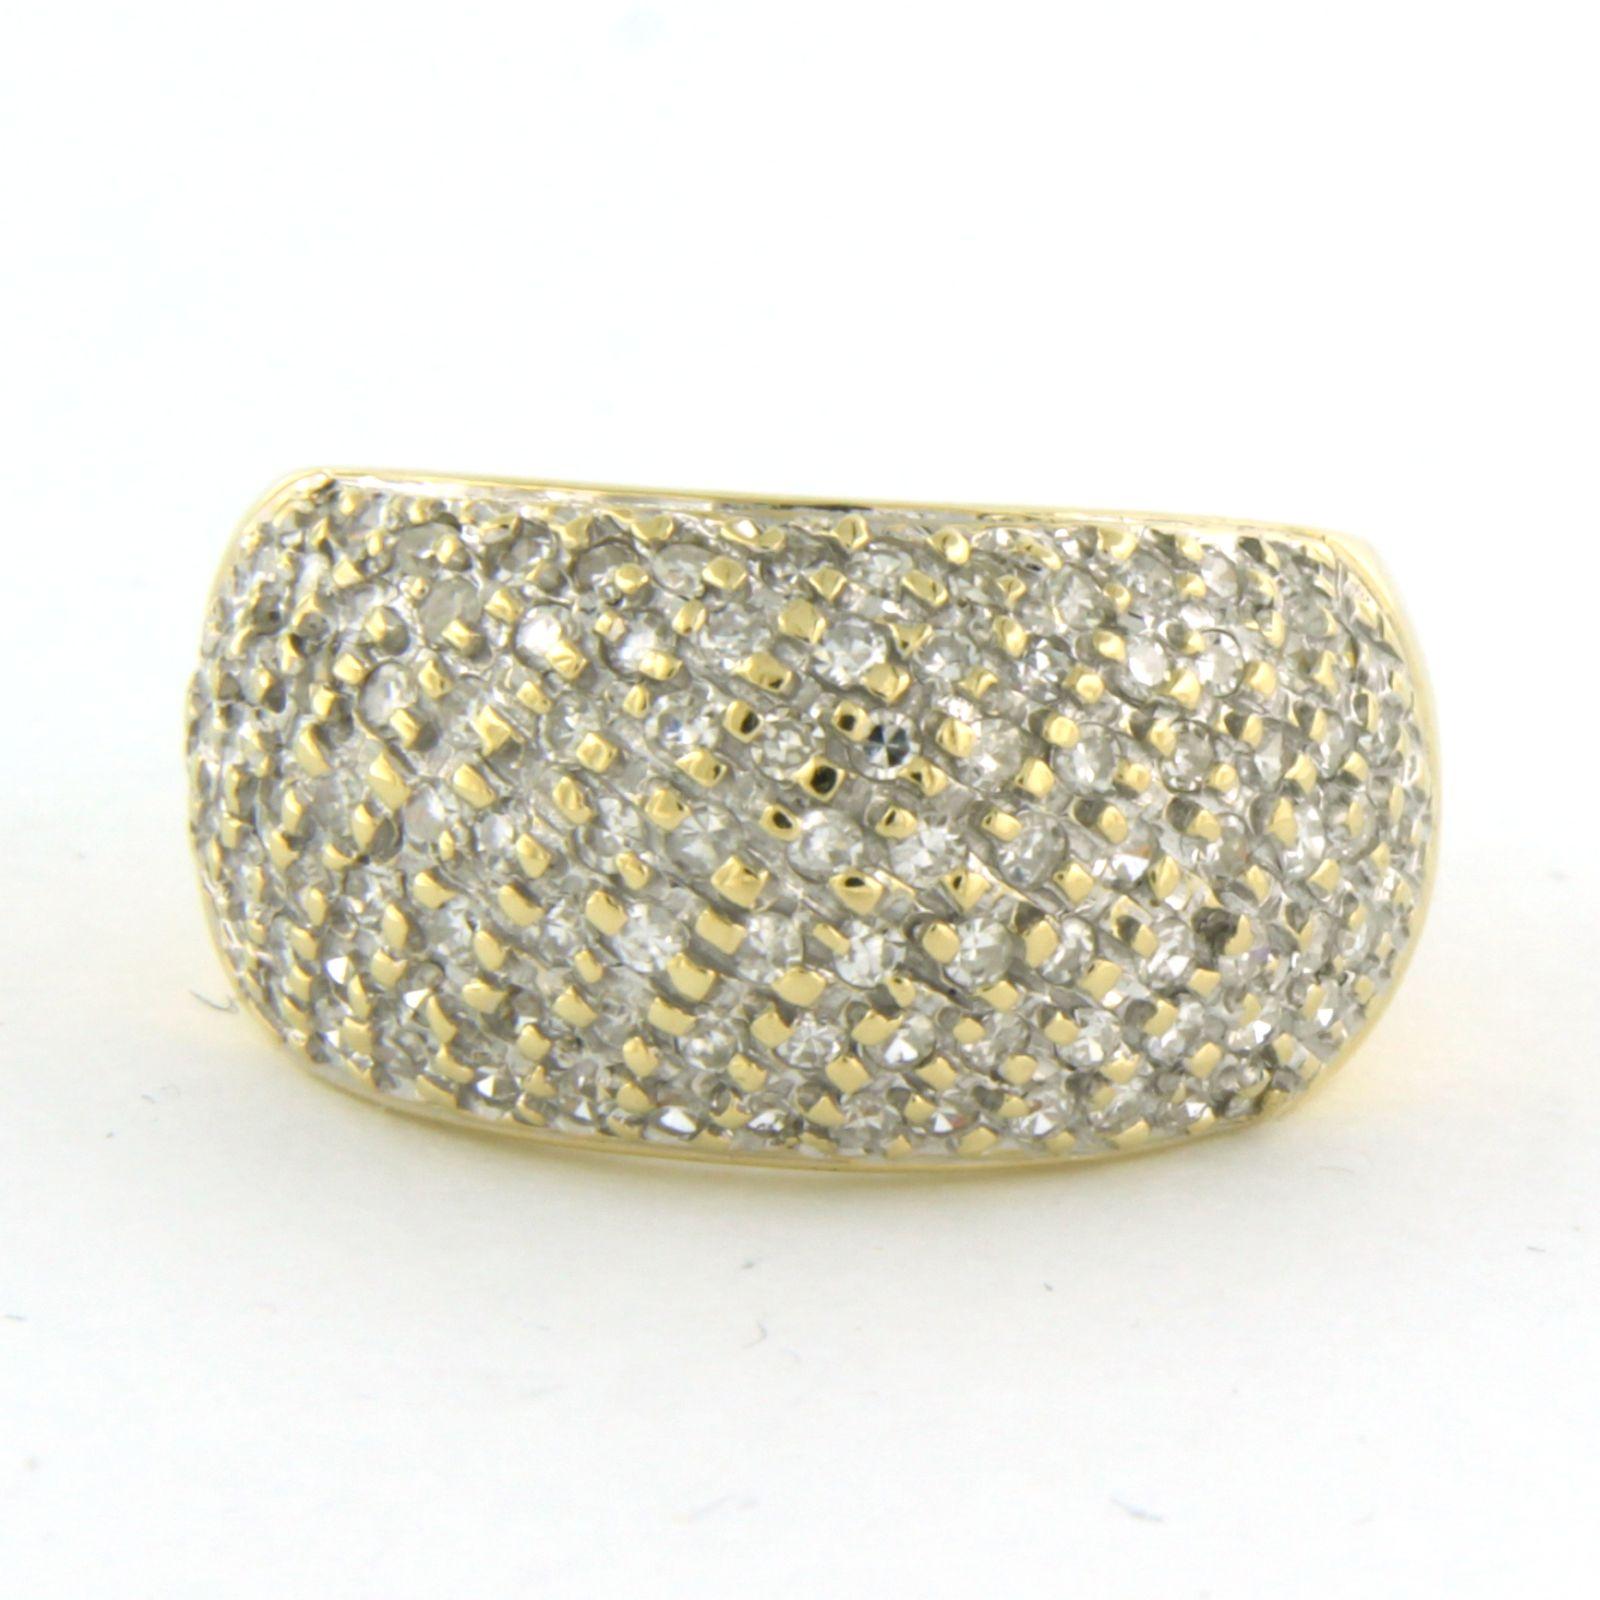 18k Bicolor-Goldring mit Diamant im Einzelschliff bis zu. 0.70ct - F/G - VS/SI - Ringgröße U.S. 6 - EU. 16.5(52)

Ausführliche Beschreibung

die Oberseite des Rings ist 1,1 cm breit und 4,2 mm hoch

Ringgröße US 6 - EU. 16.5(52), Ring kann zum